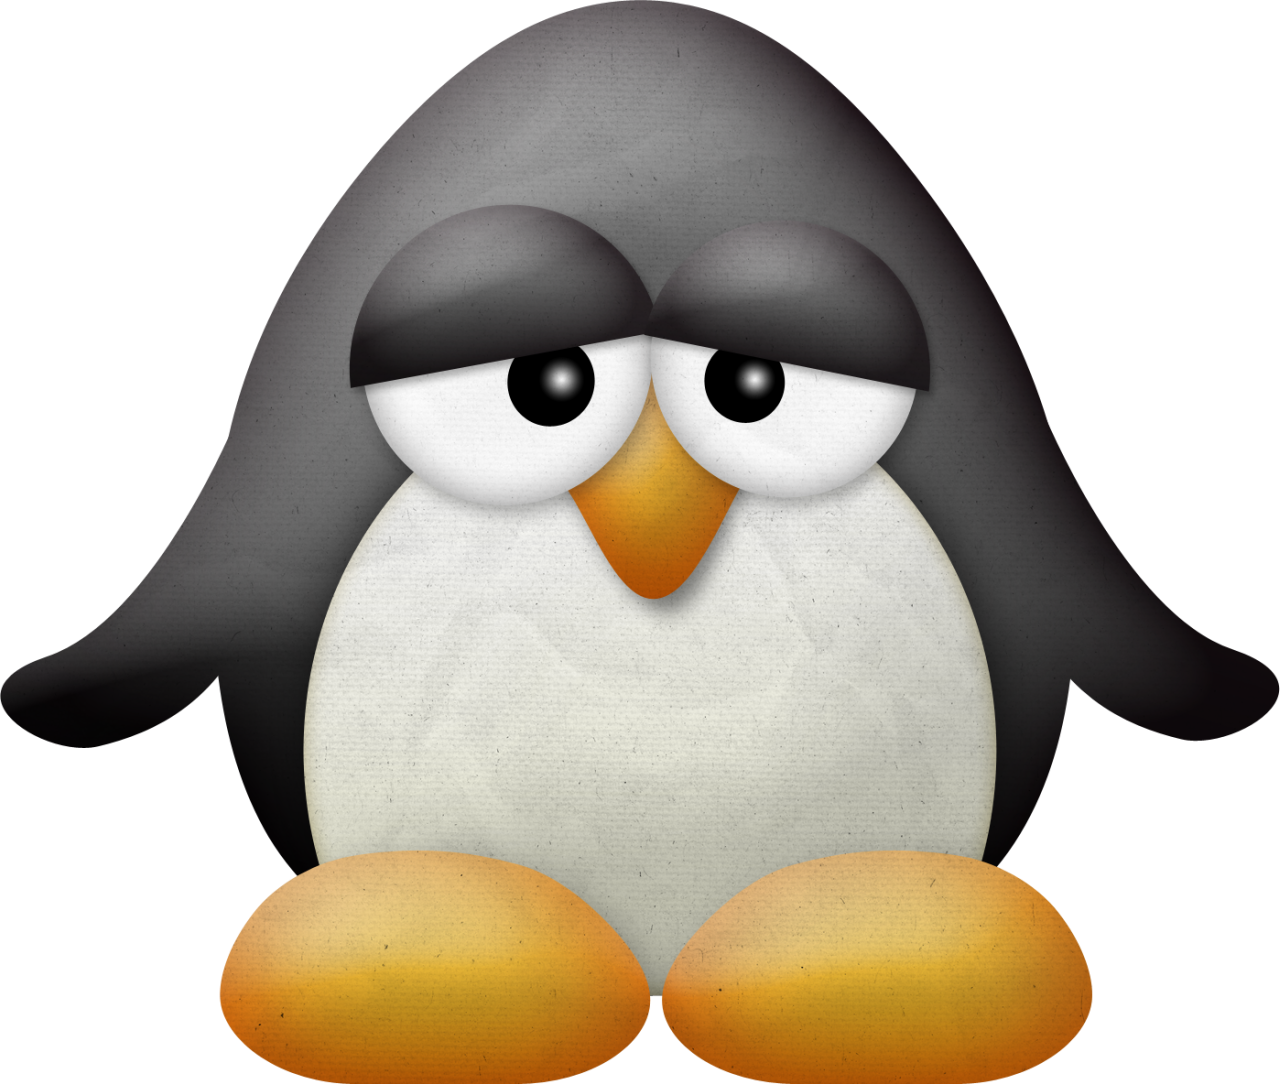 Penquin penguin egg